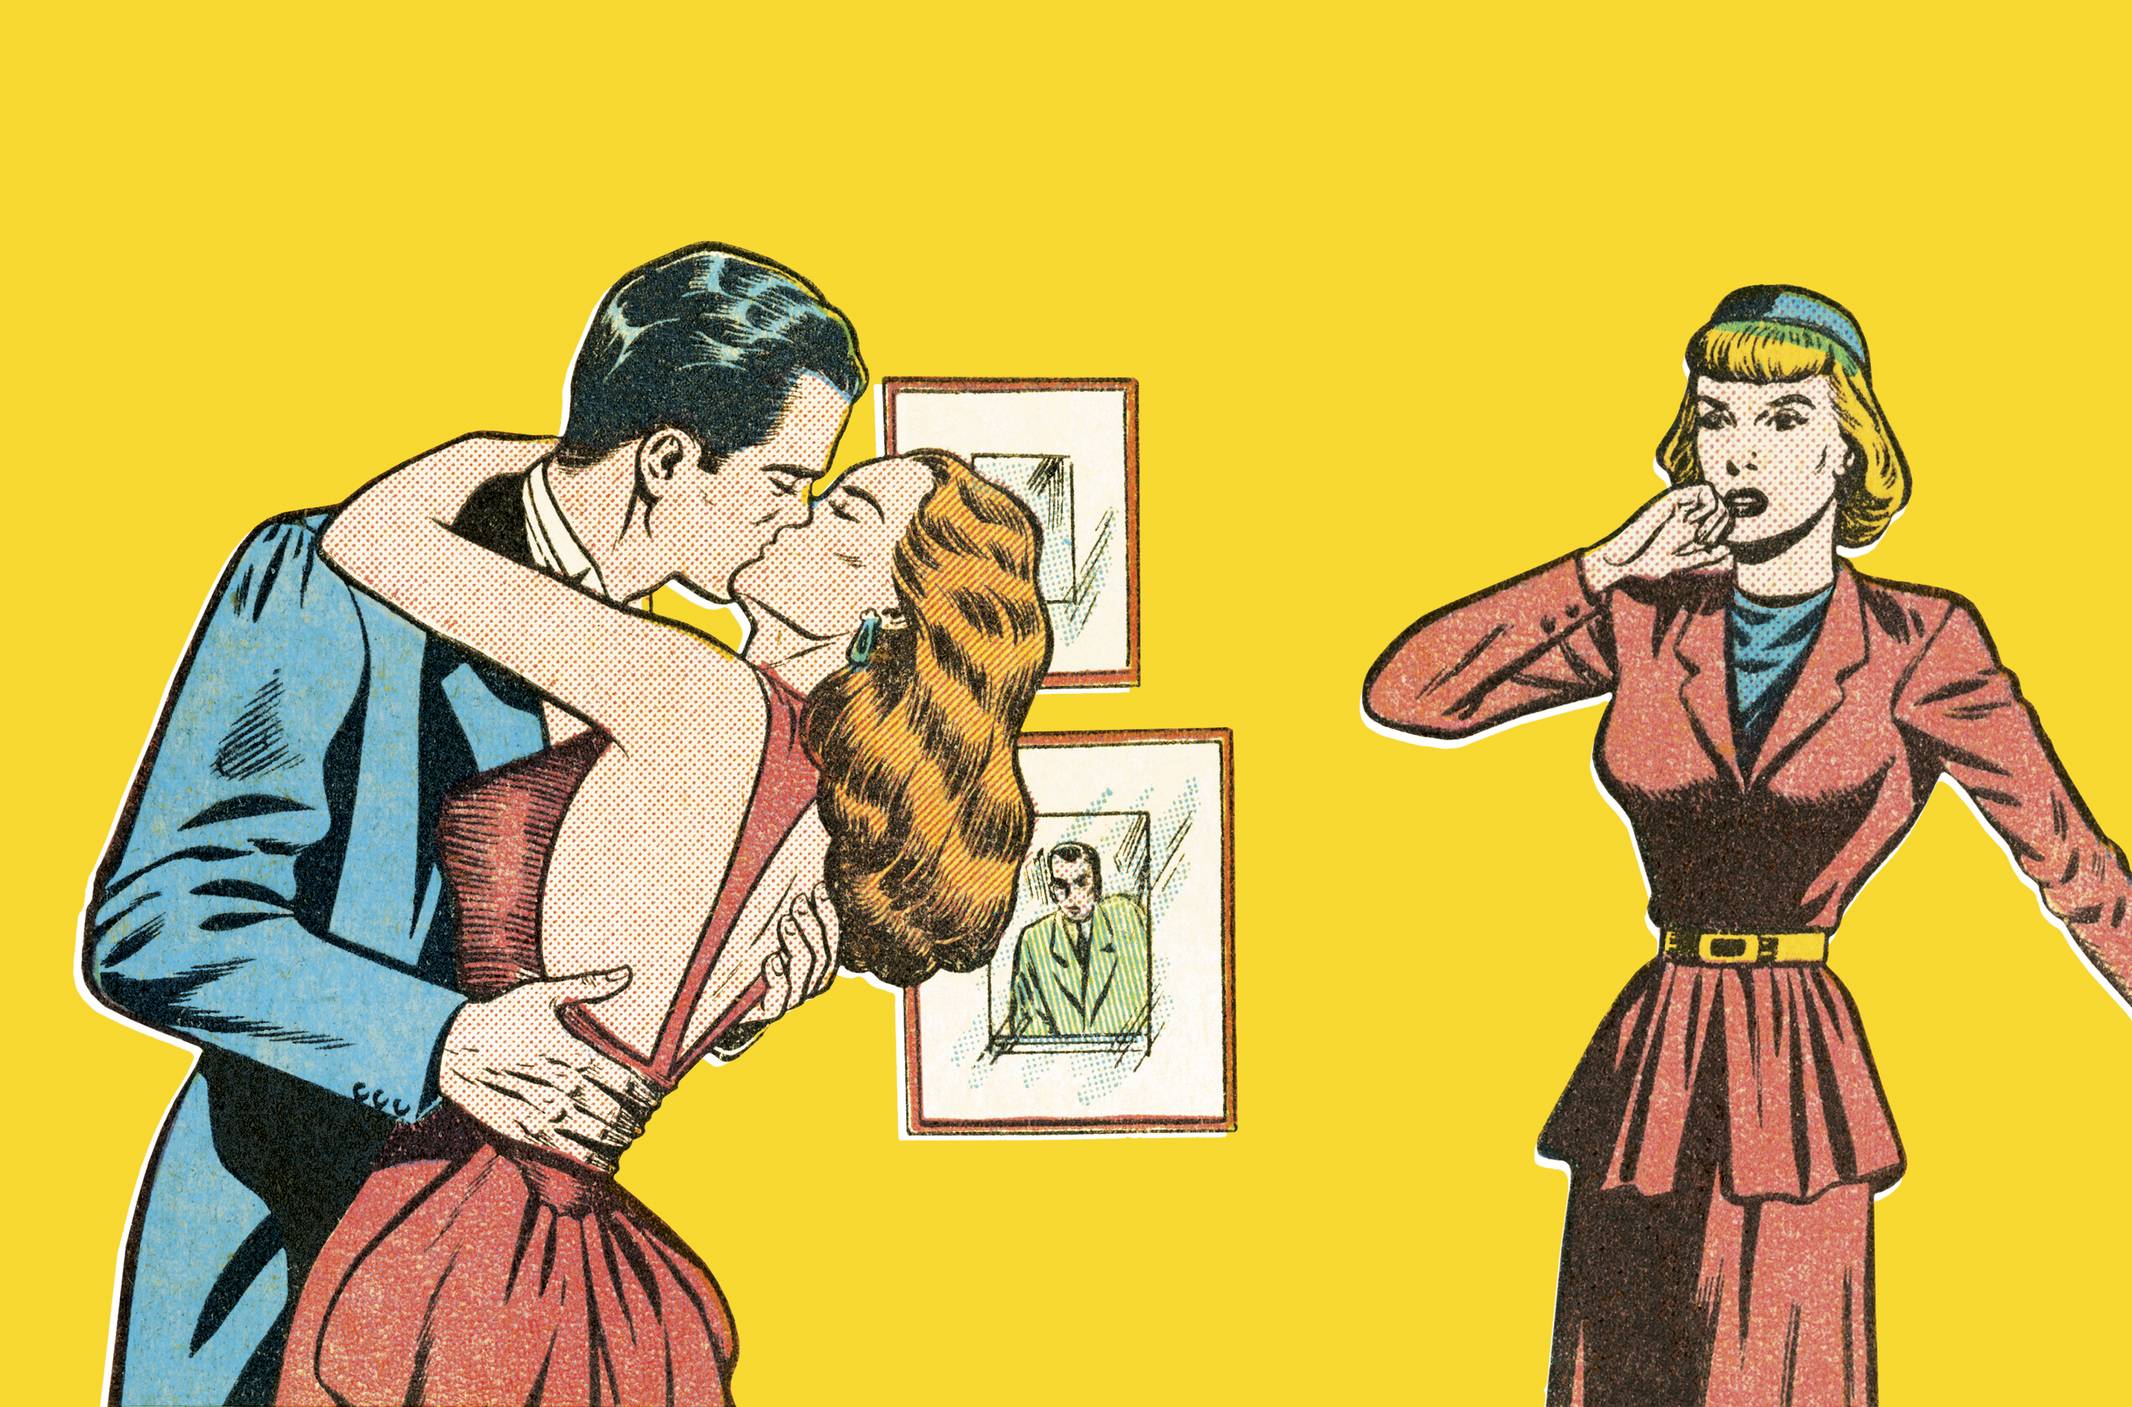 www.juicysantos.com.br - traição pode gerar danos morais - esposa flagra marido beijando outra mulher em estilo de desenho dos anos 50